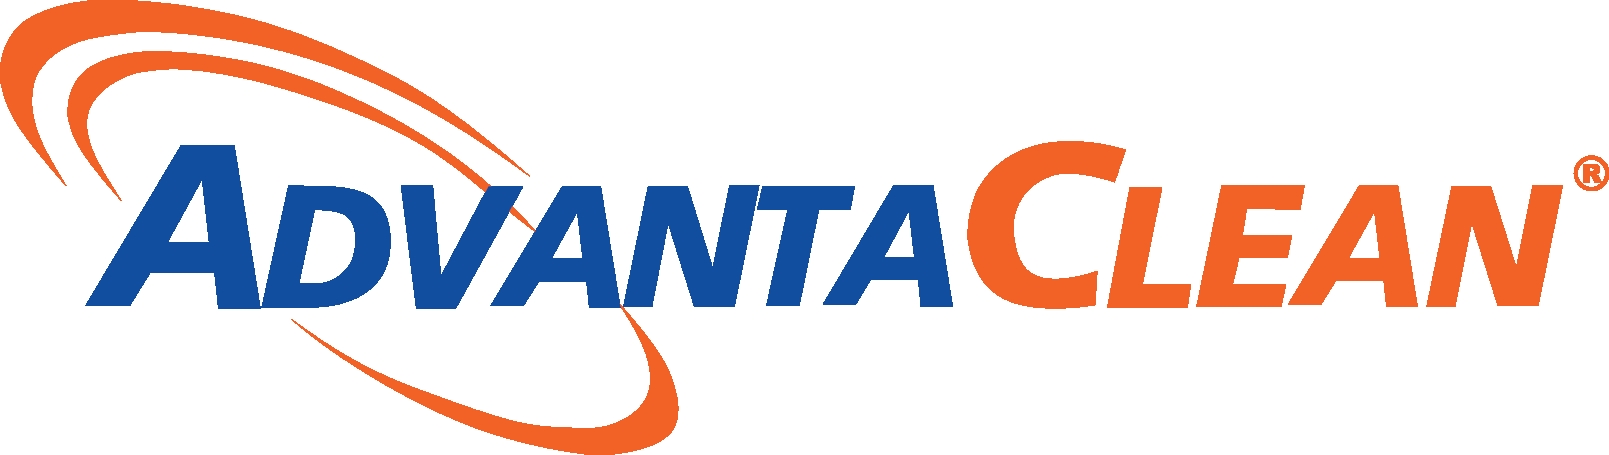 AdvantaClean Systems, Inc. logo